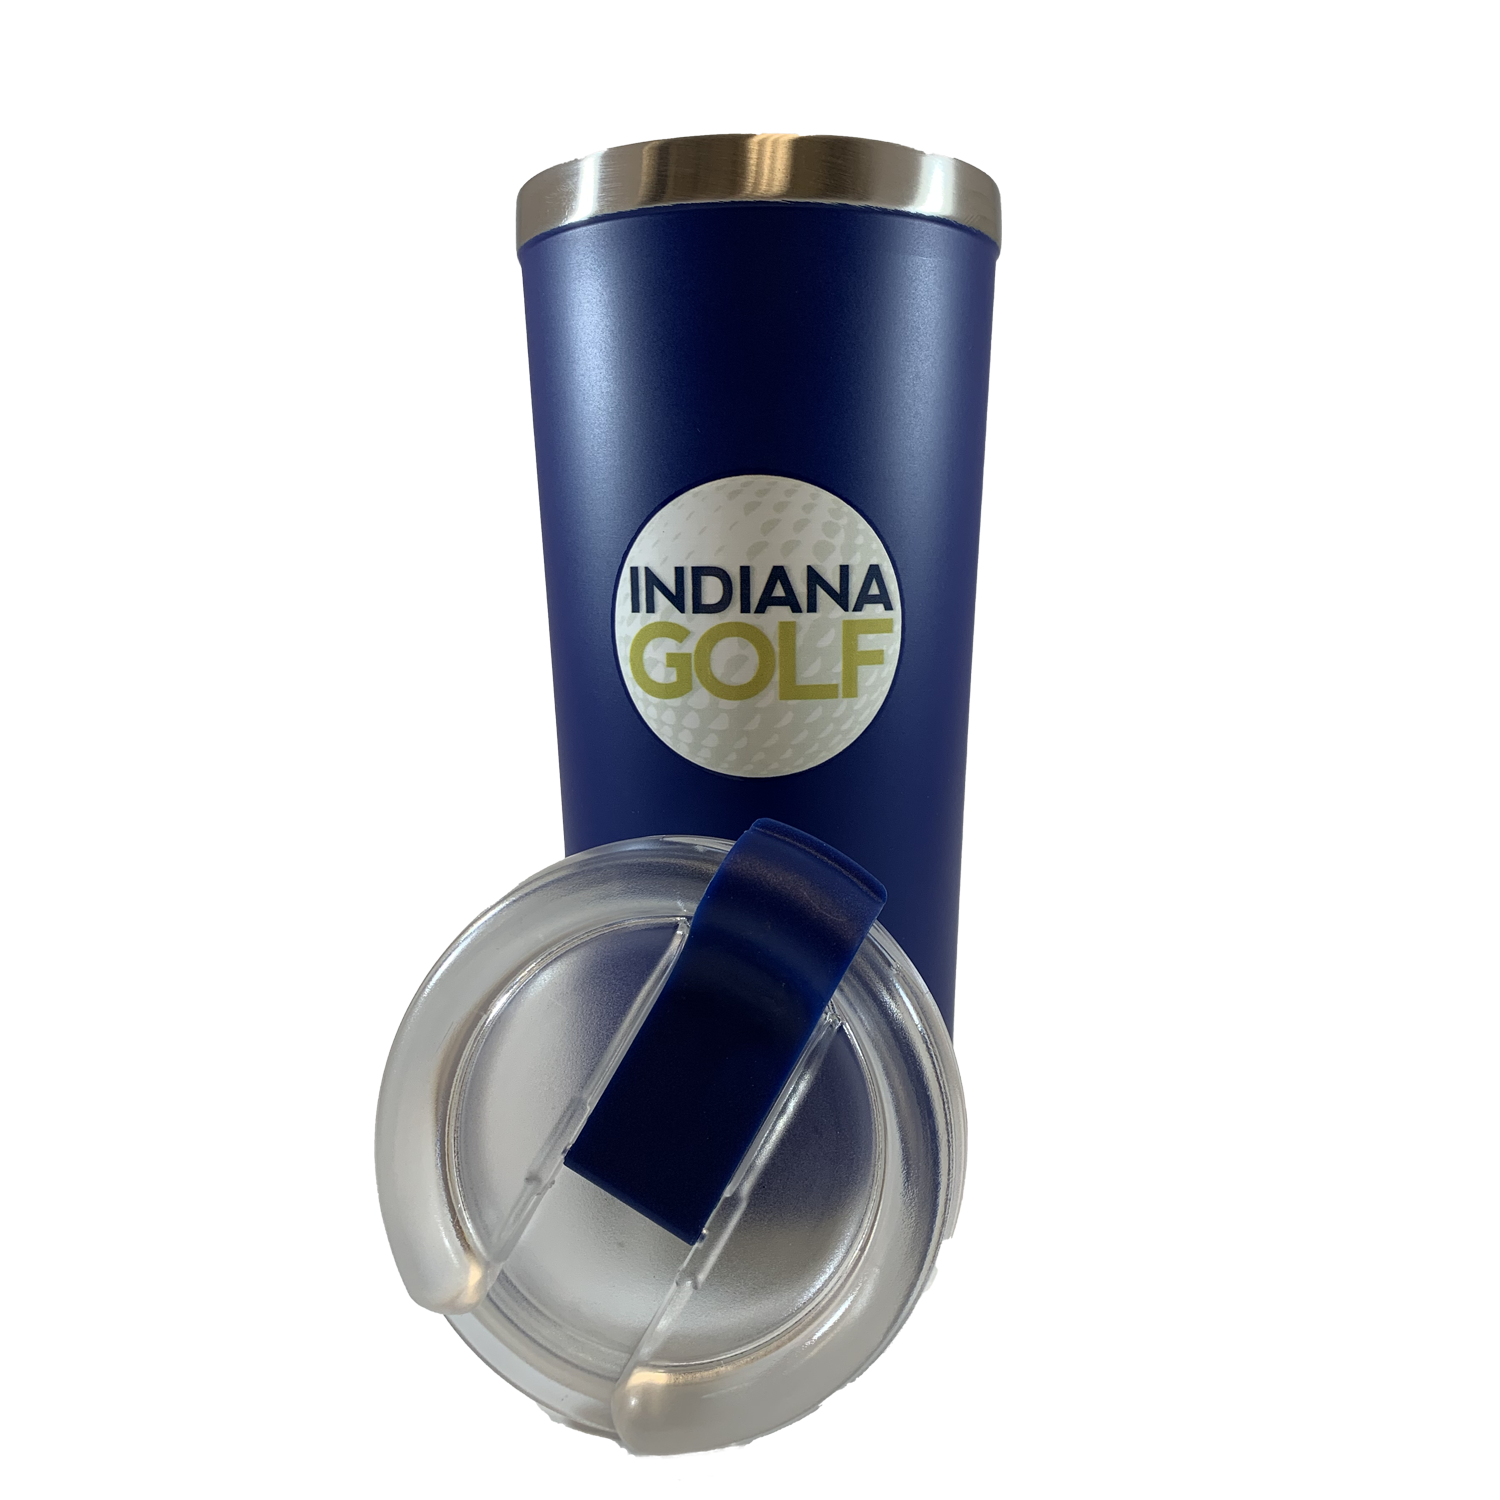 Indiana_Golf_Tumbler.png